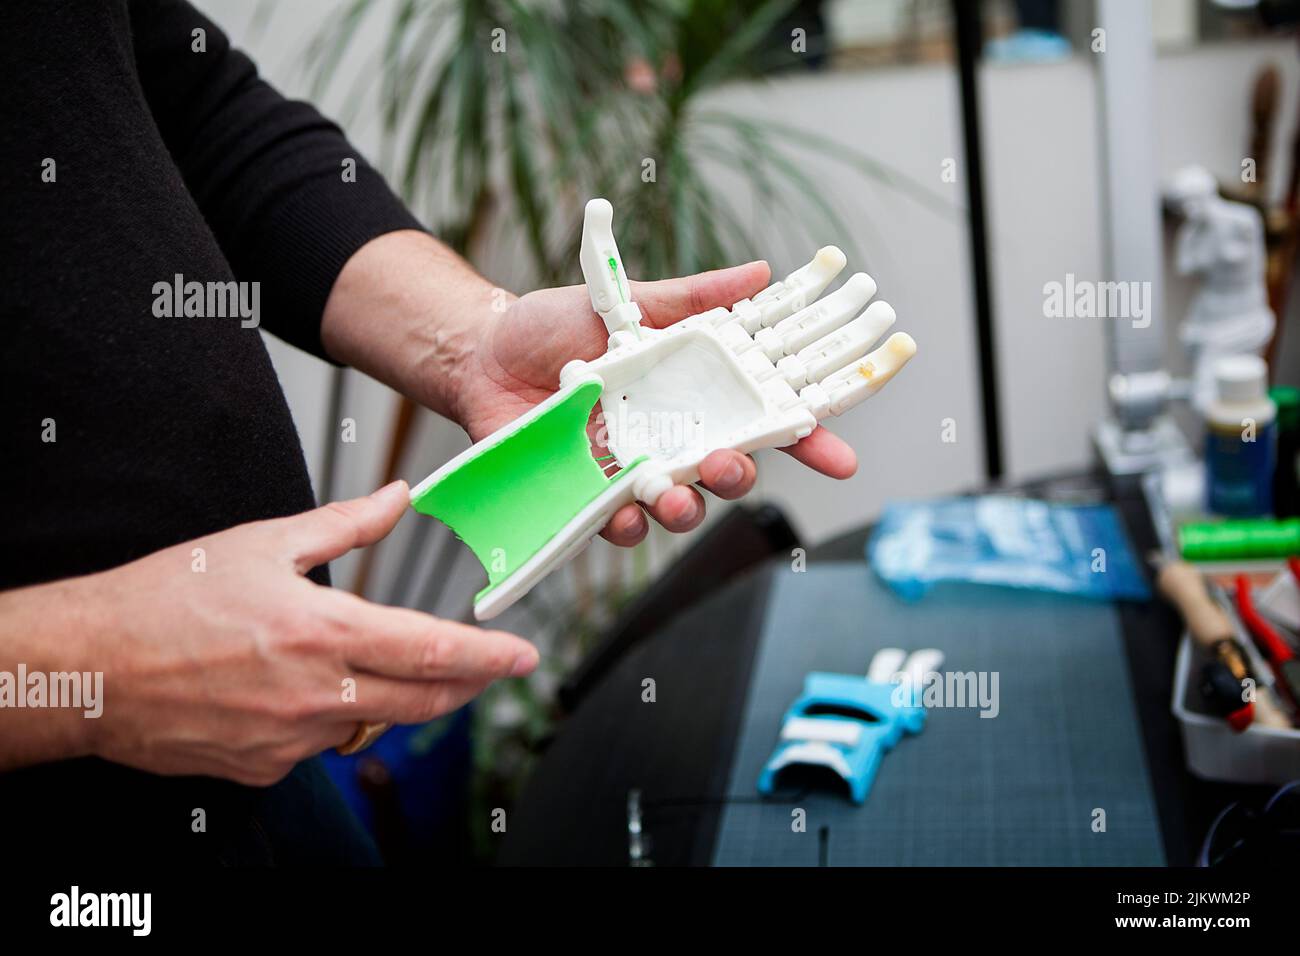 Fabrication d'une main robotique en 3D impression pour une personne handicapée. Banque D'Images